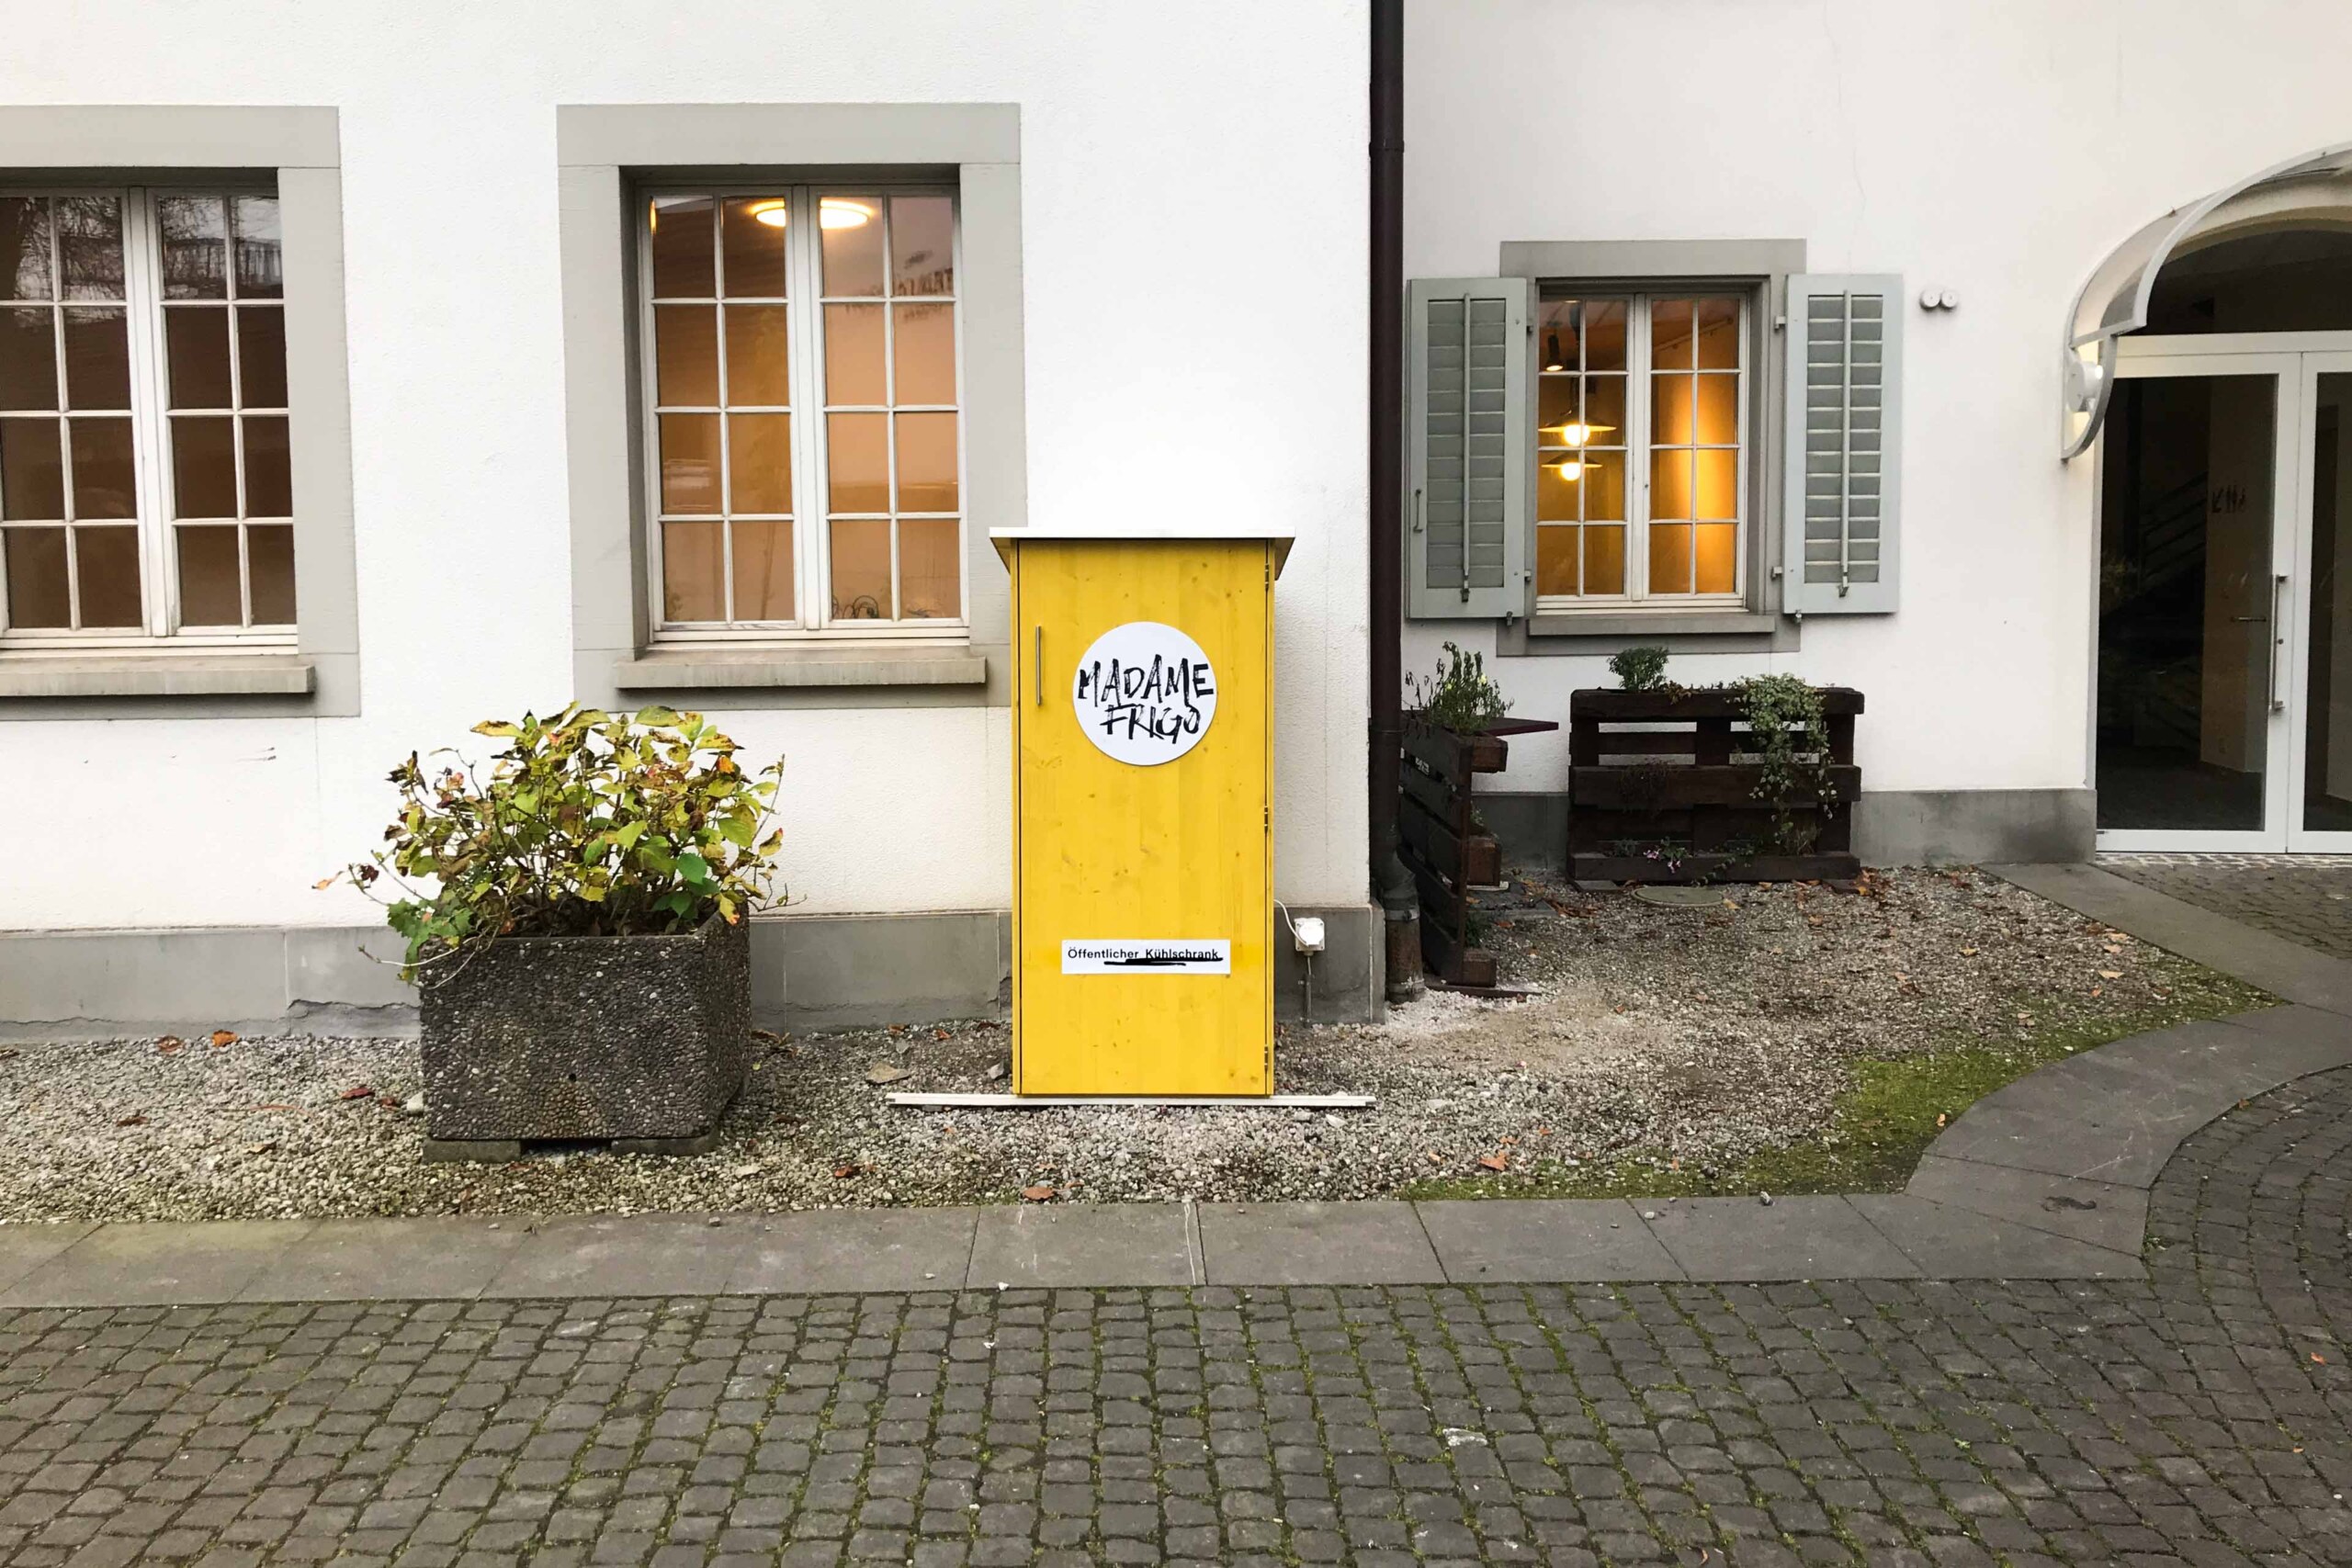 來自琉森的“冰箱女士”(Madame Frigo)協會目前在瑞士管理著92台冰箱。冰箱裡放有由義工從商店獲得的剩餘食物，免費提供給所需要的人。助人與零廢食的類似行動有很多，稱呼不同但目標和理念相同。schrank